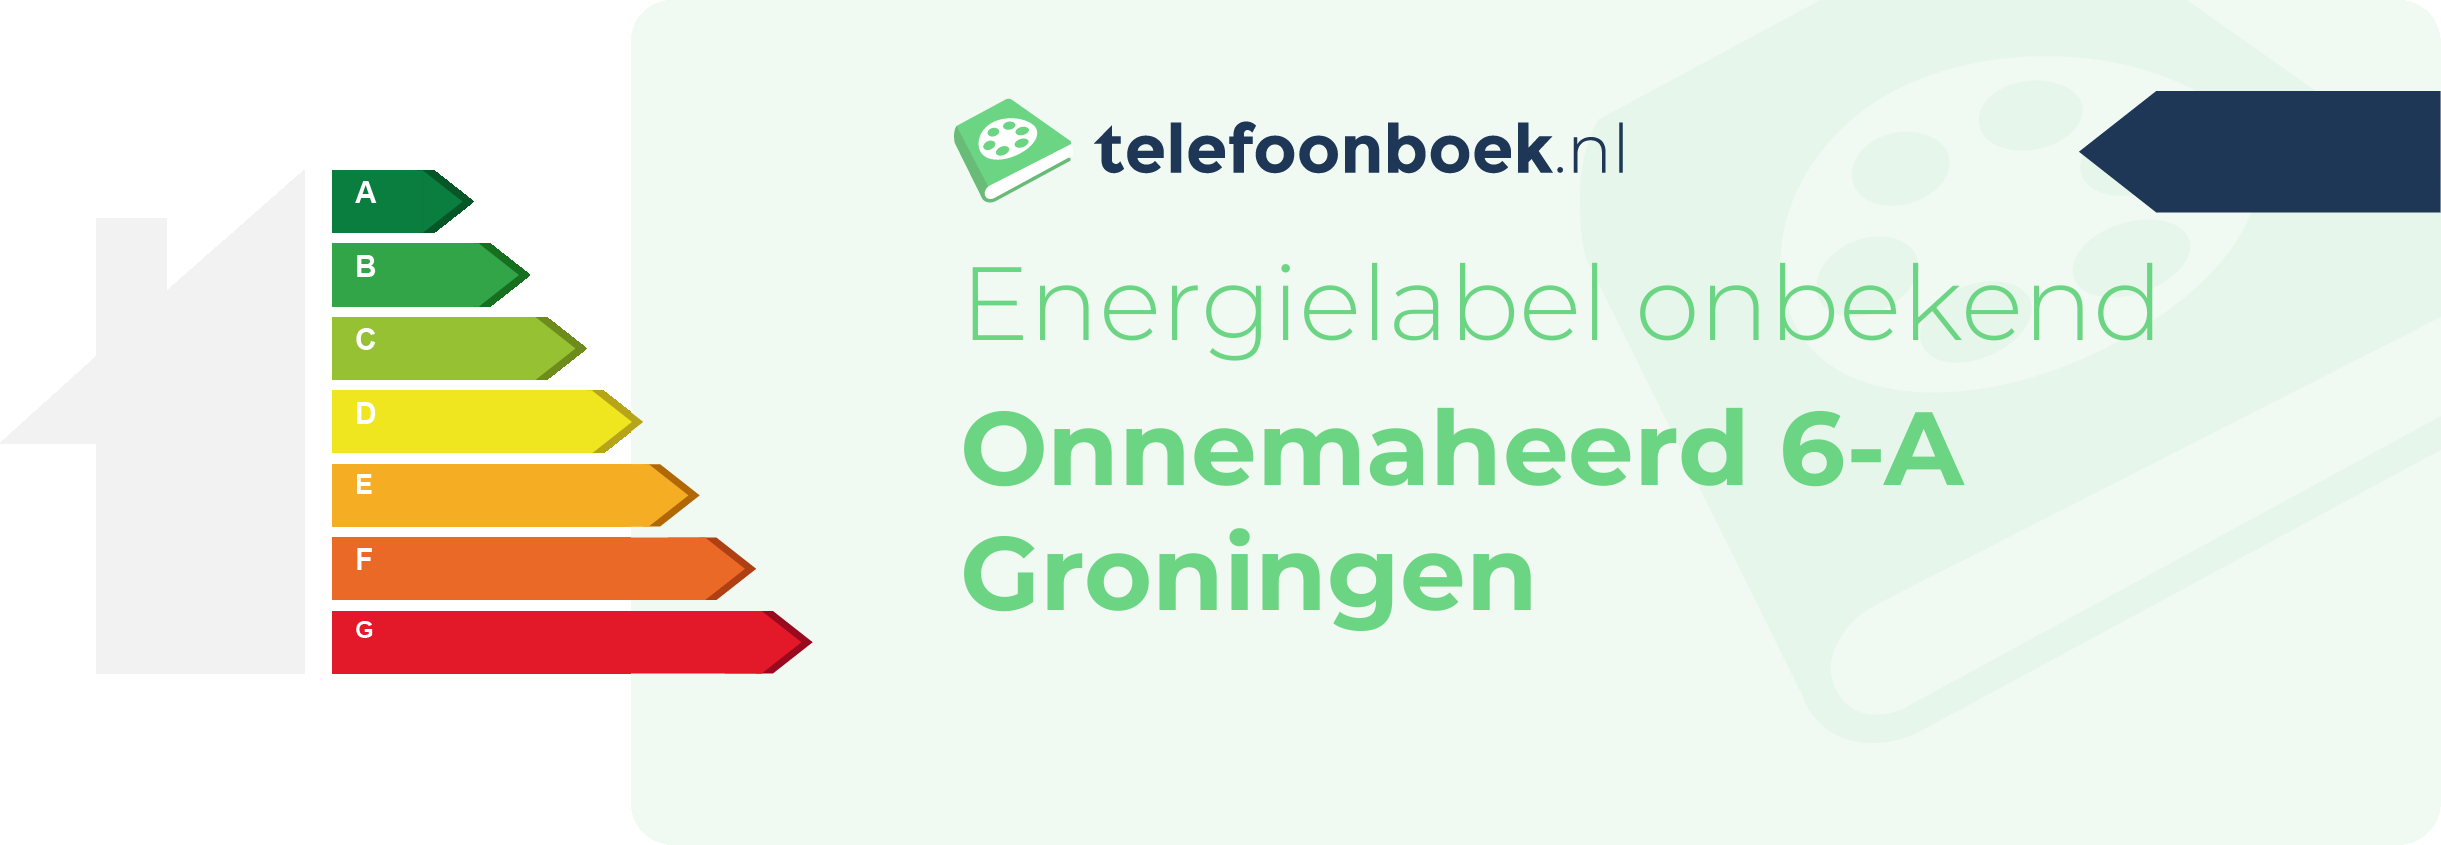 Energielabel Onnemaheerd 6-A Groningen